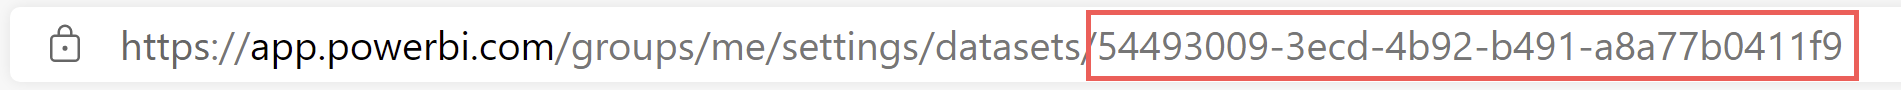 Screenshot di un ID set di dati di esempio.